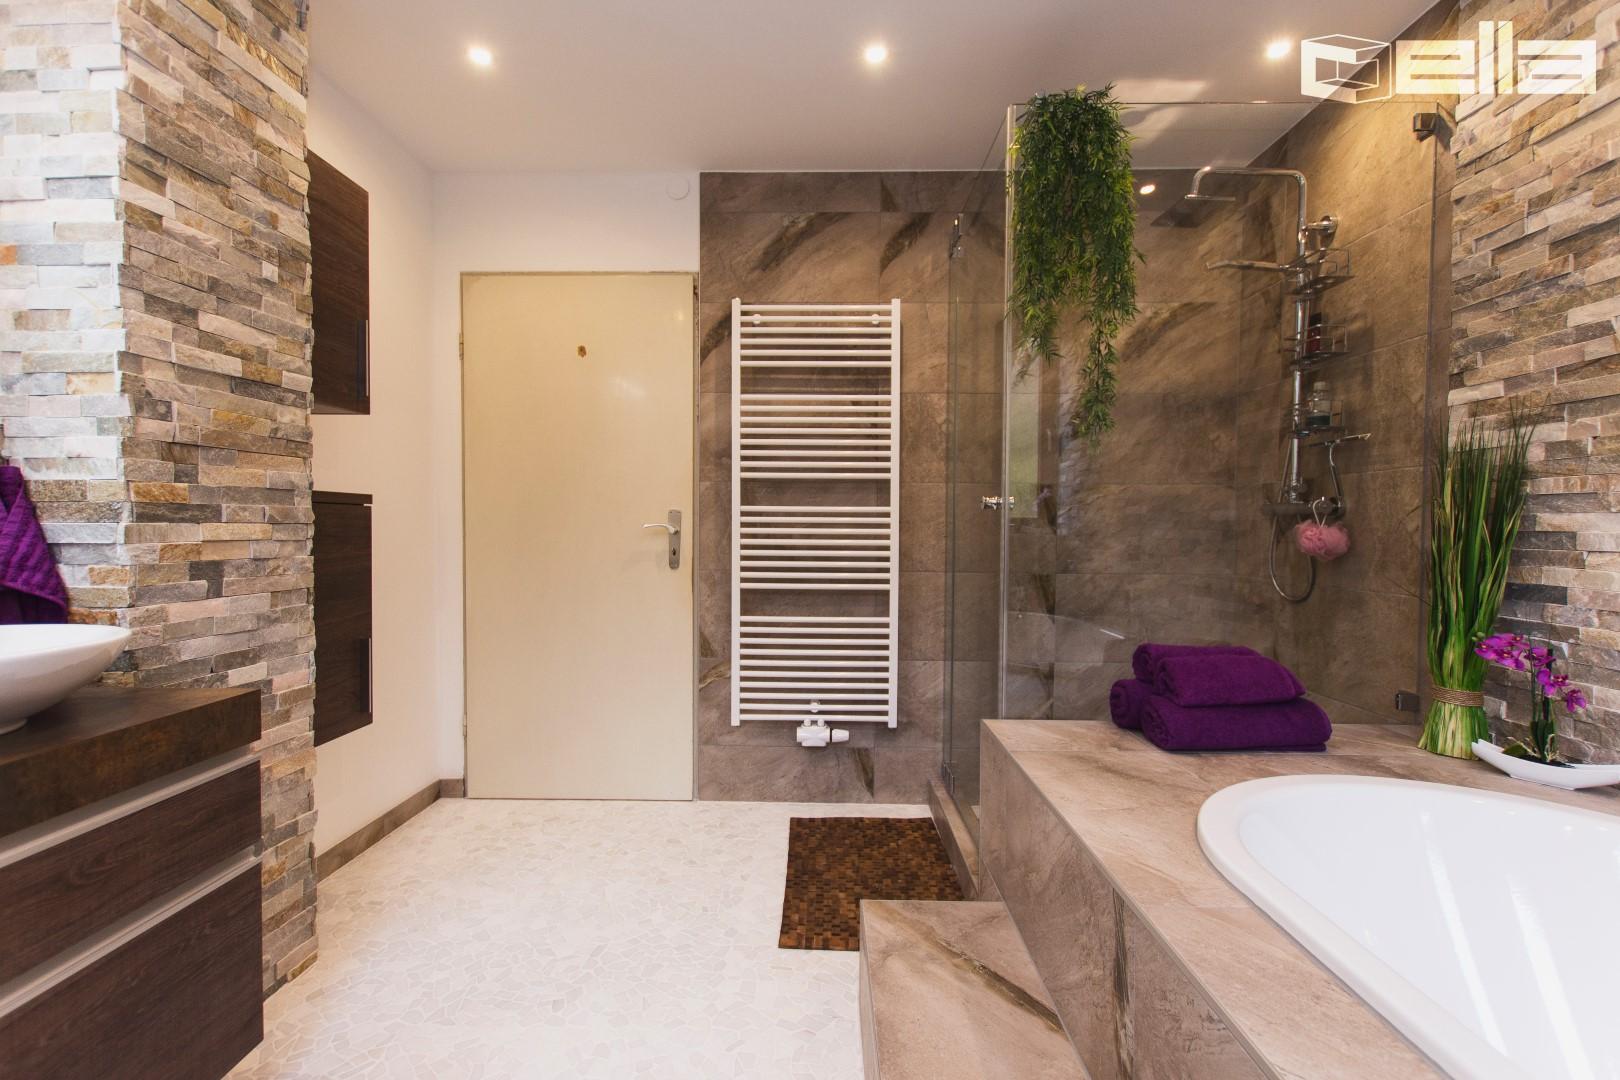 Ein Bad mit Individuellem Design München Waldperlach #fliesen #badsanierung ©Cella GmbH